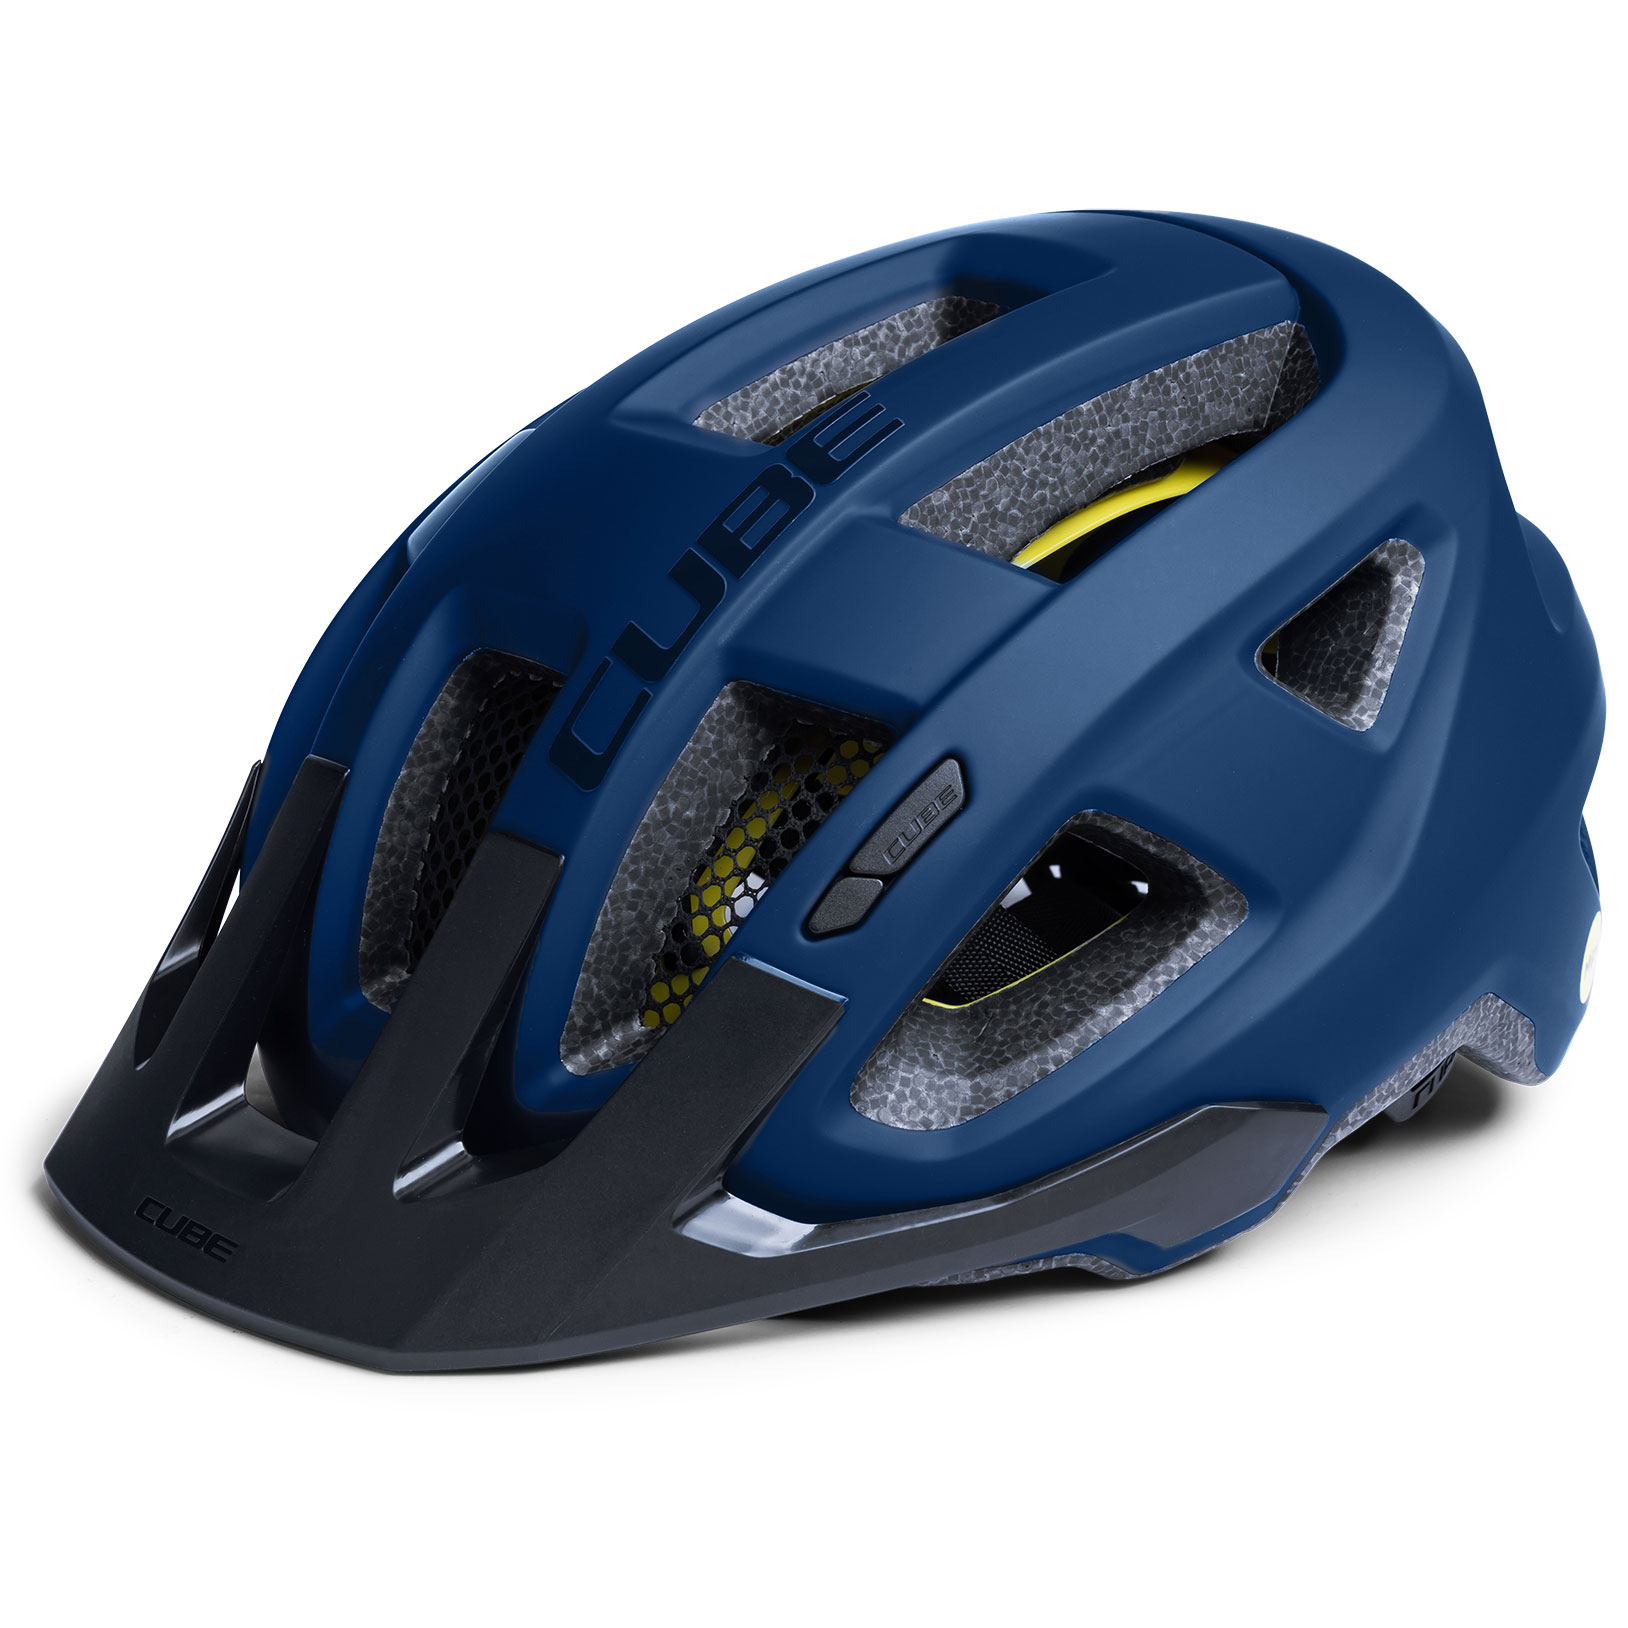 Produktbild von CUBE FLEET Helm - blau